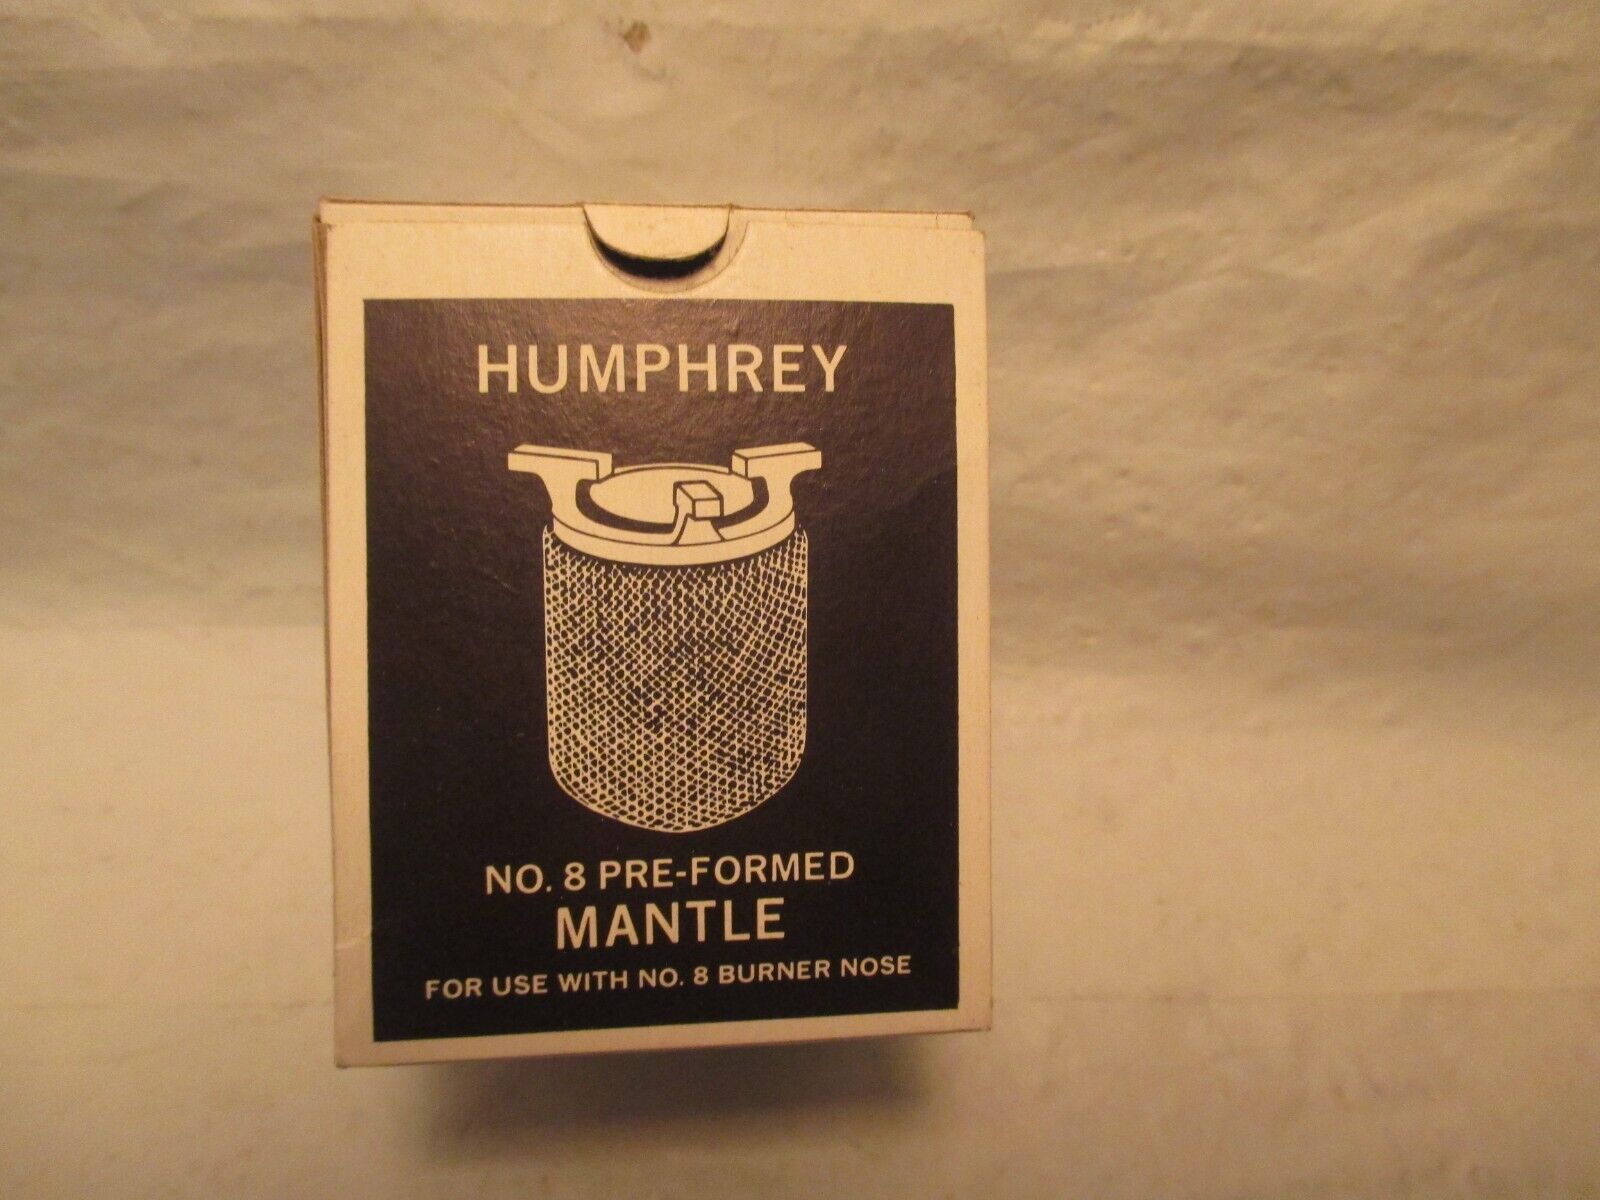 HUMPHREY No. 8 PRE FORMED MANTLE